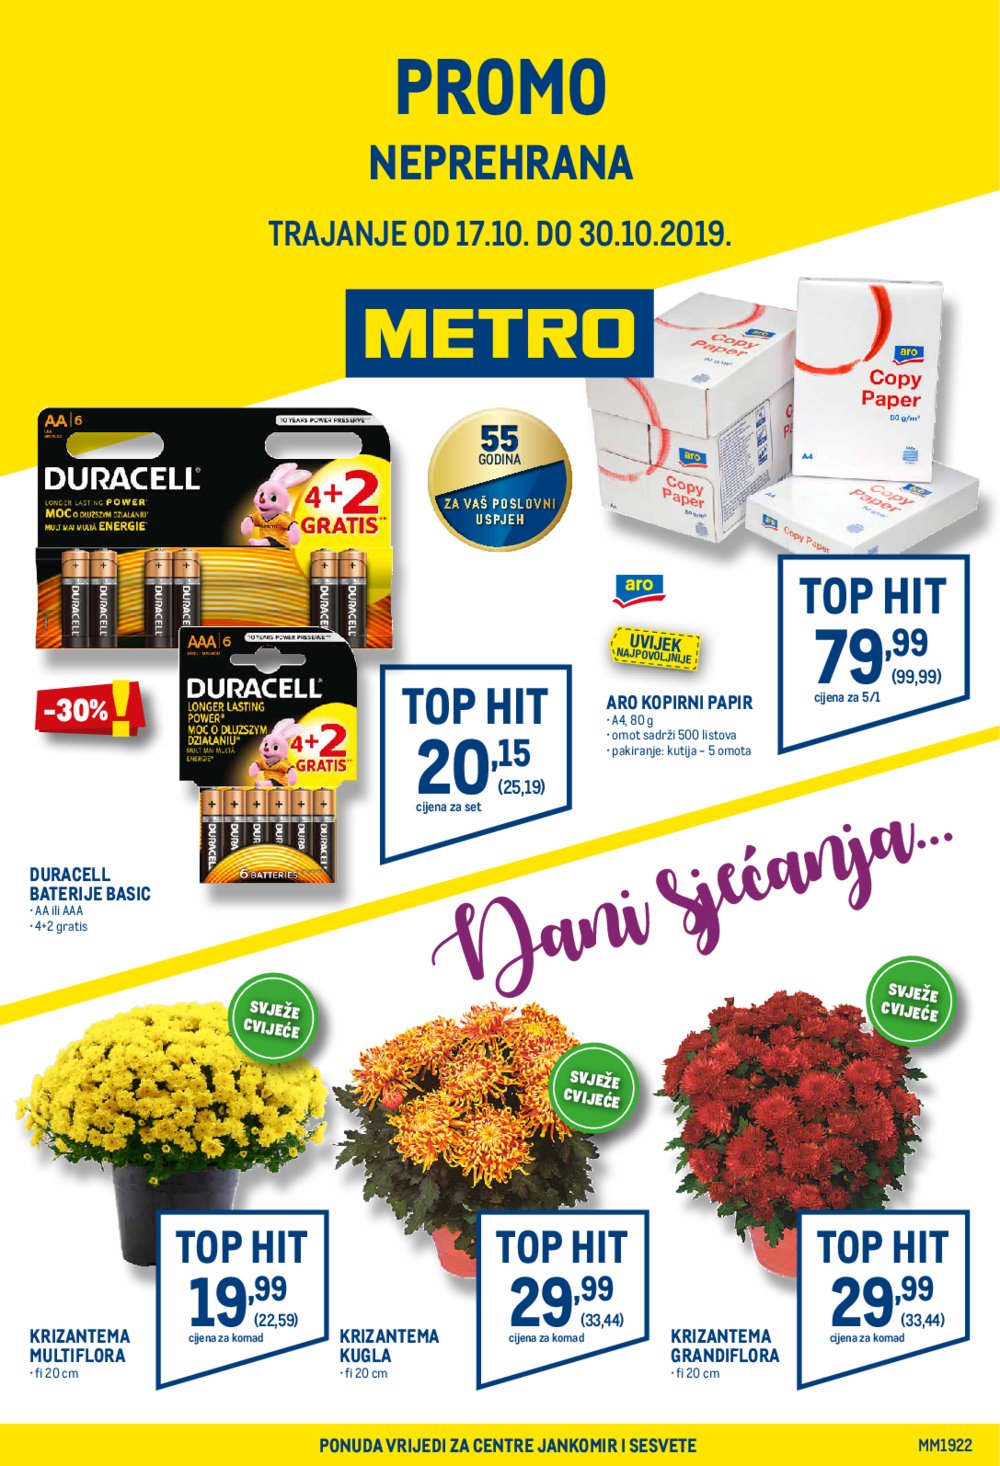 Metro katalog Neprehrana 17.10. - 30.10.2019.